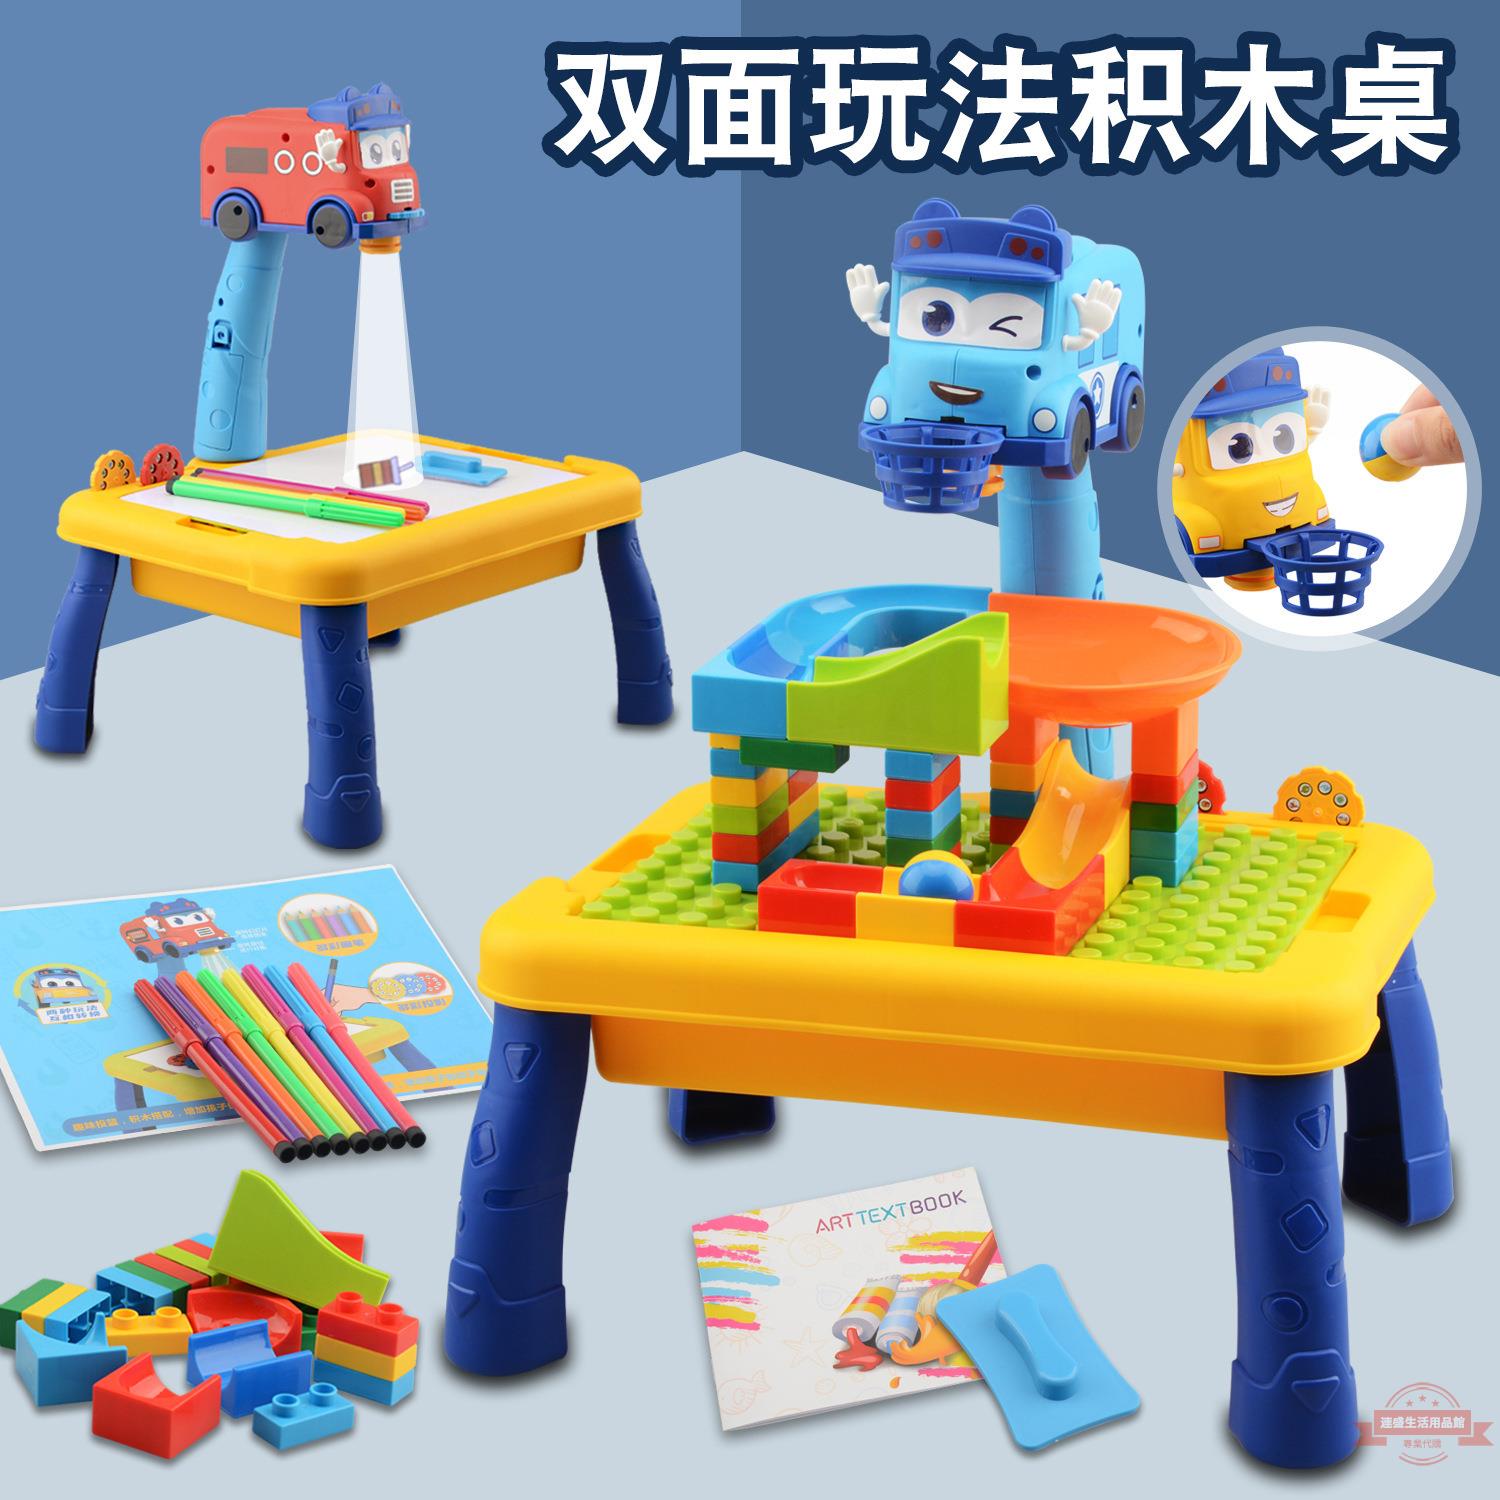 兒童益智科技百變校巴投影繪畫拼裝積木桌可收納多功能學習桌玩具